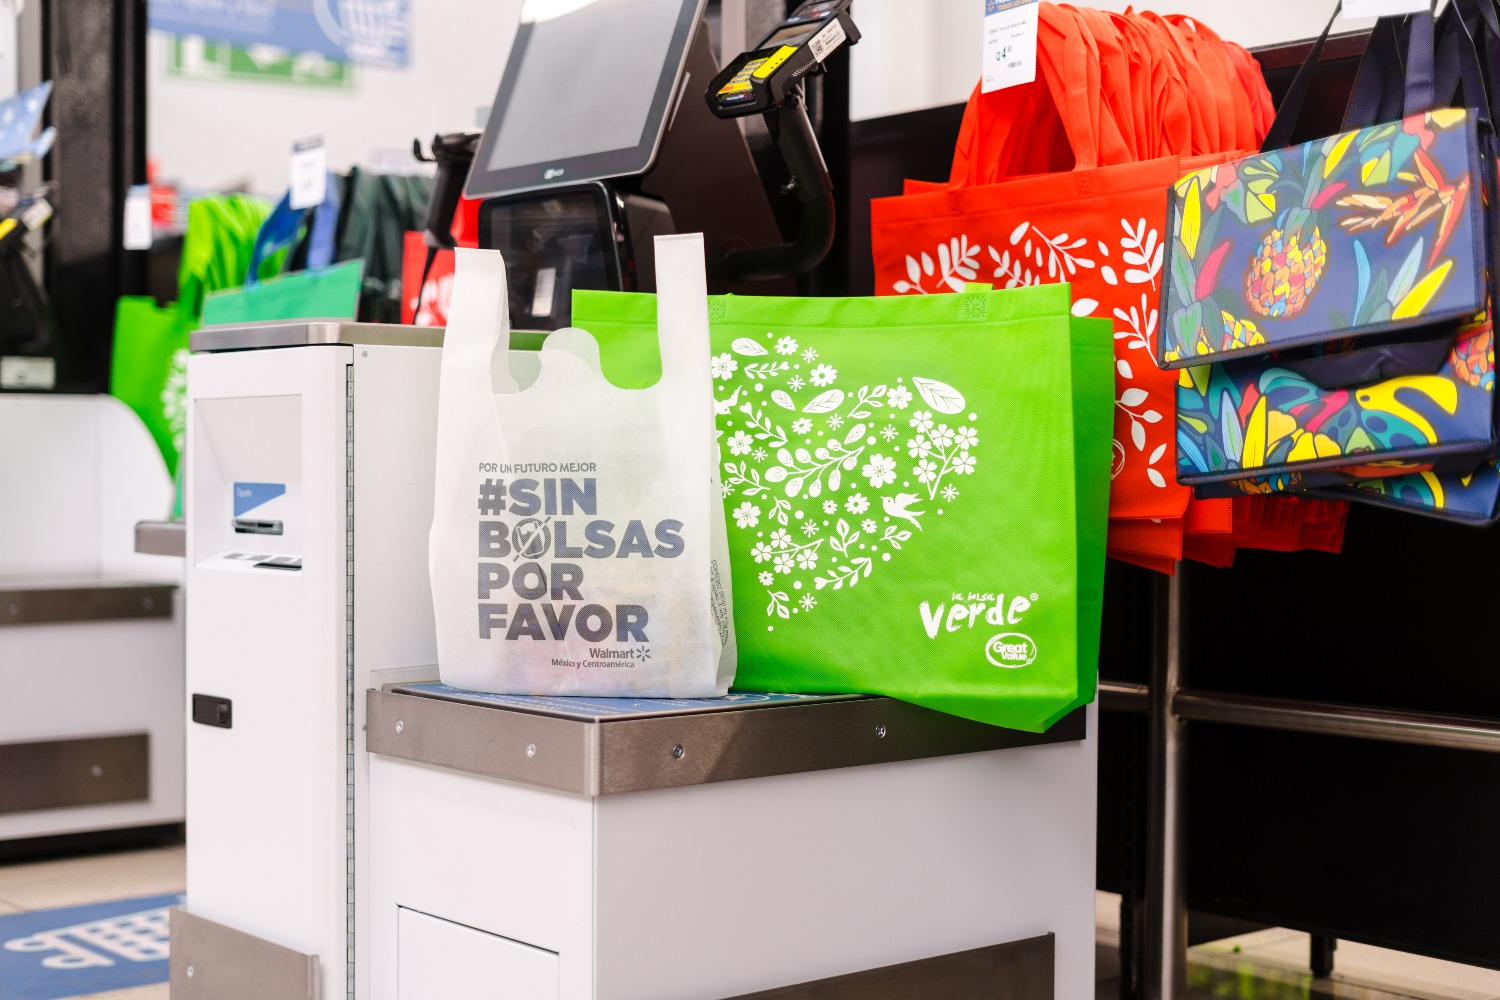 Walmart da pasos firmes para ser una empresa regenerativa con Proyecto Gigatón y eliminación de bolsas plásticas